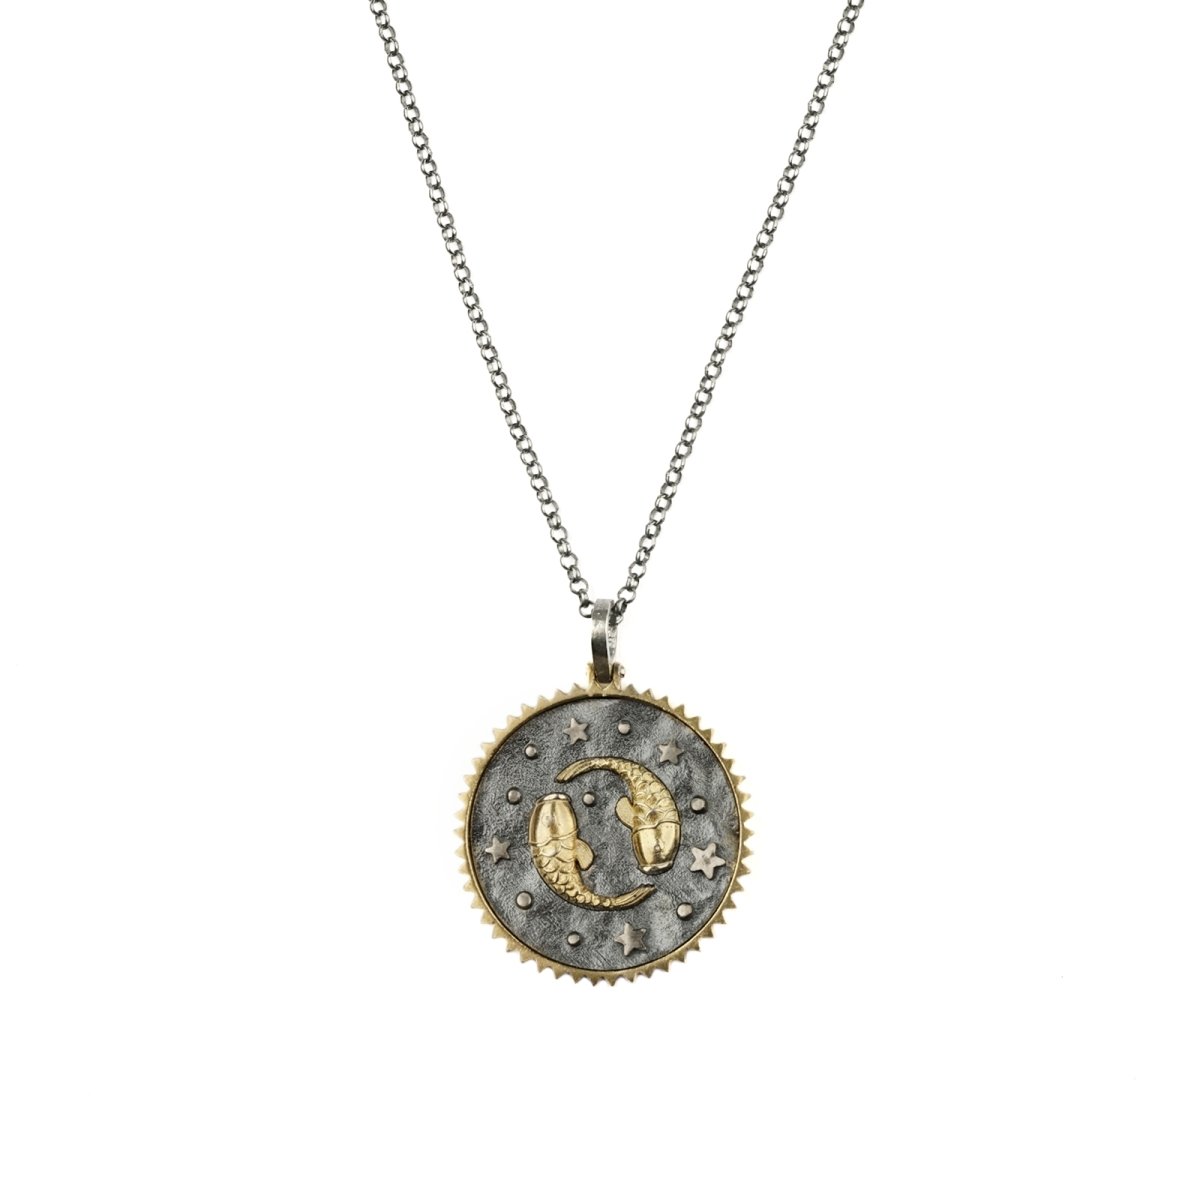 Pregomesh Women's Angel Chain Necklace